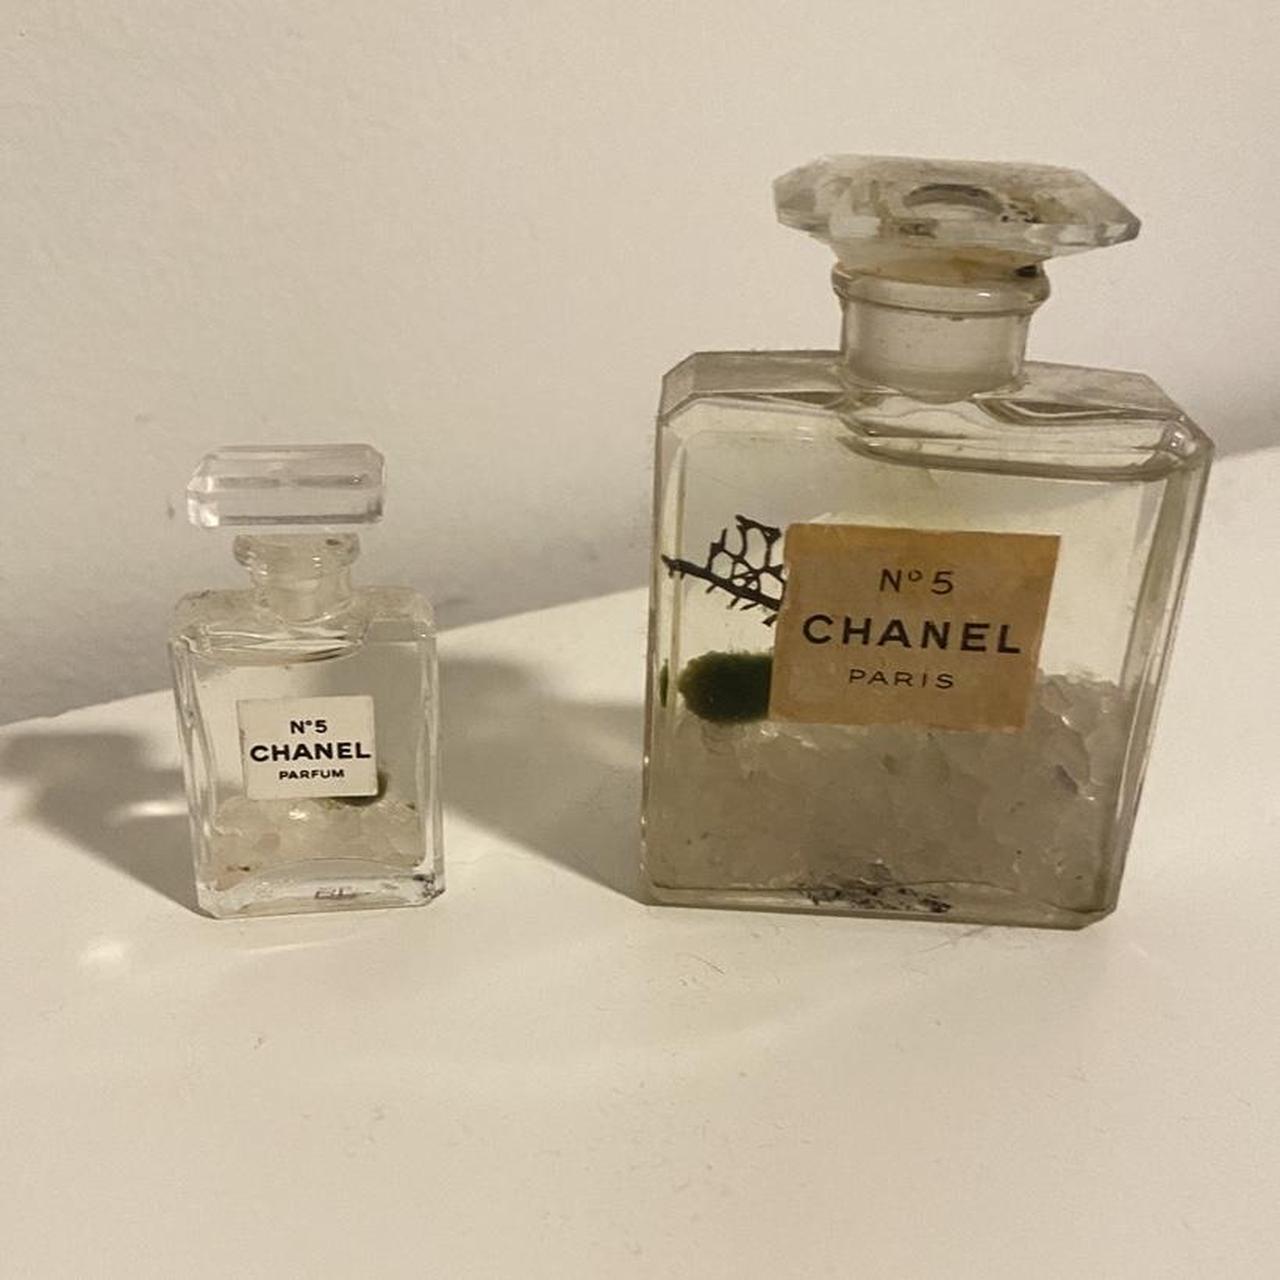 Vintage Chanel Perfume bottles turned into little - Depop